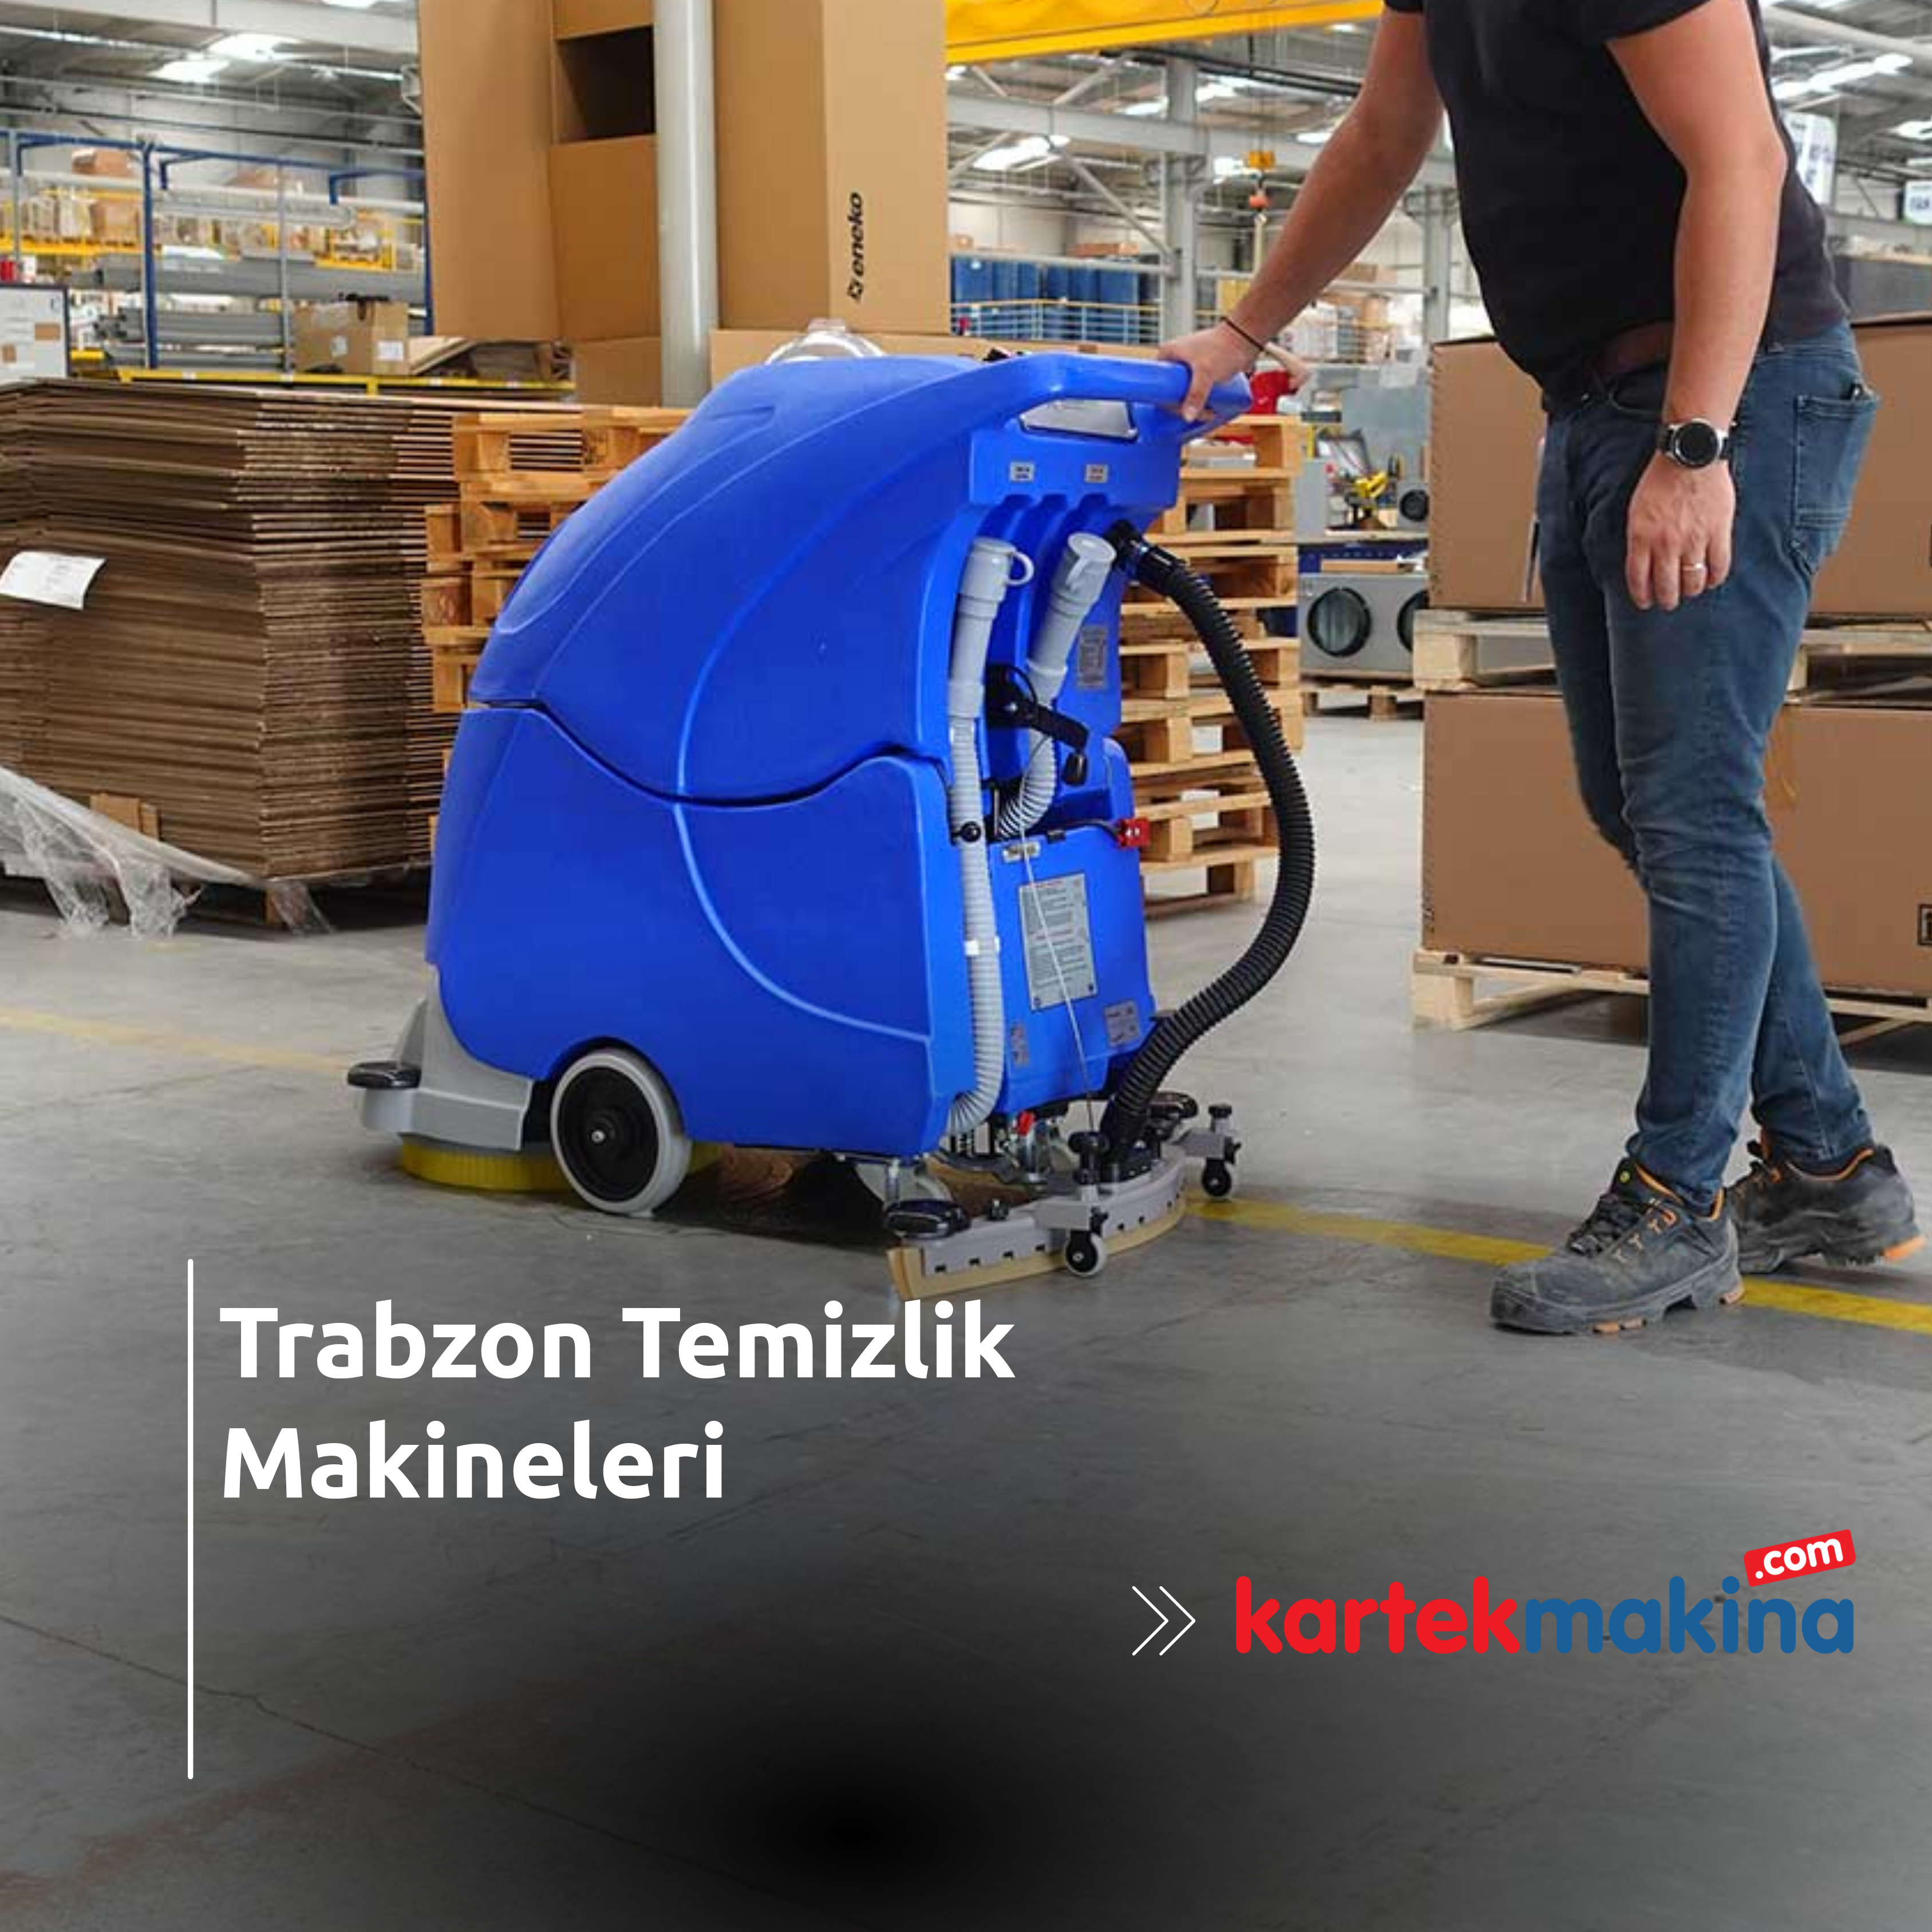 Trabzon Temizlik Makineleri - Trabzon Temizlik Makineleri